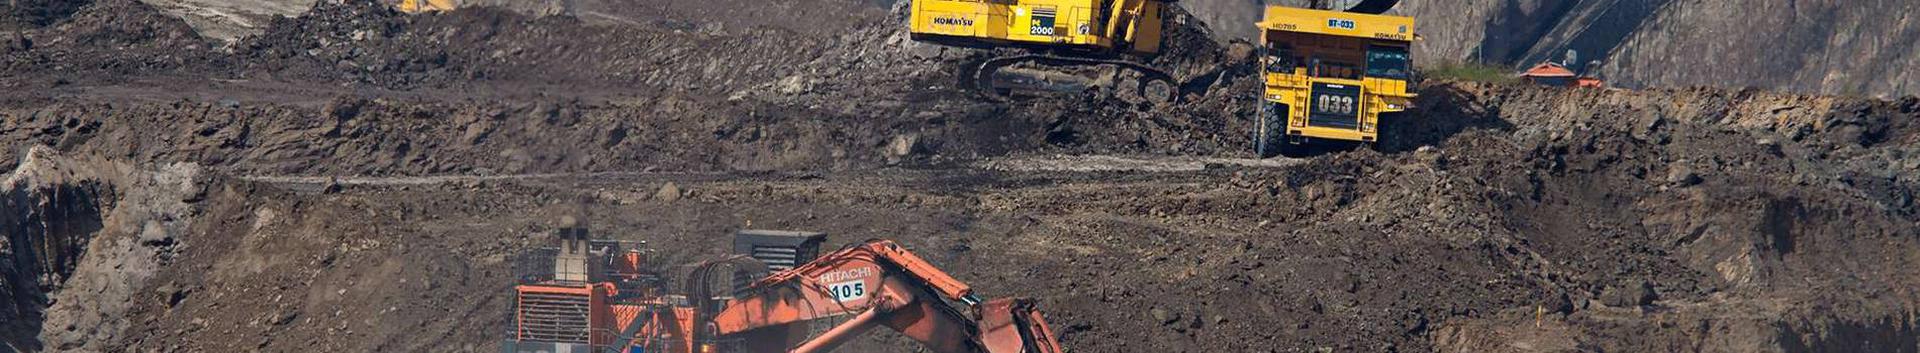 OÜ Vlatket on asutatud 1998. aastal Eestis. Ettevõtte tegevusala on kaevandus - ja ehitusmasinate hulgikaubandus.